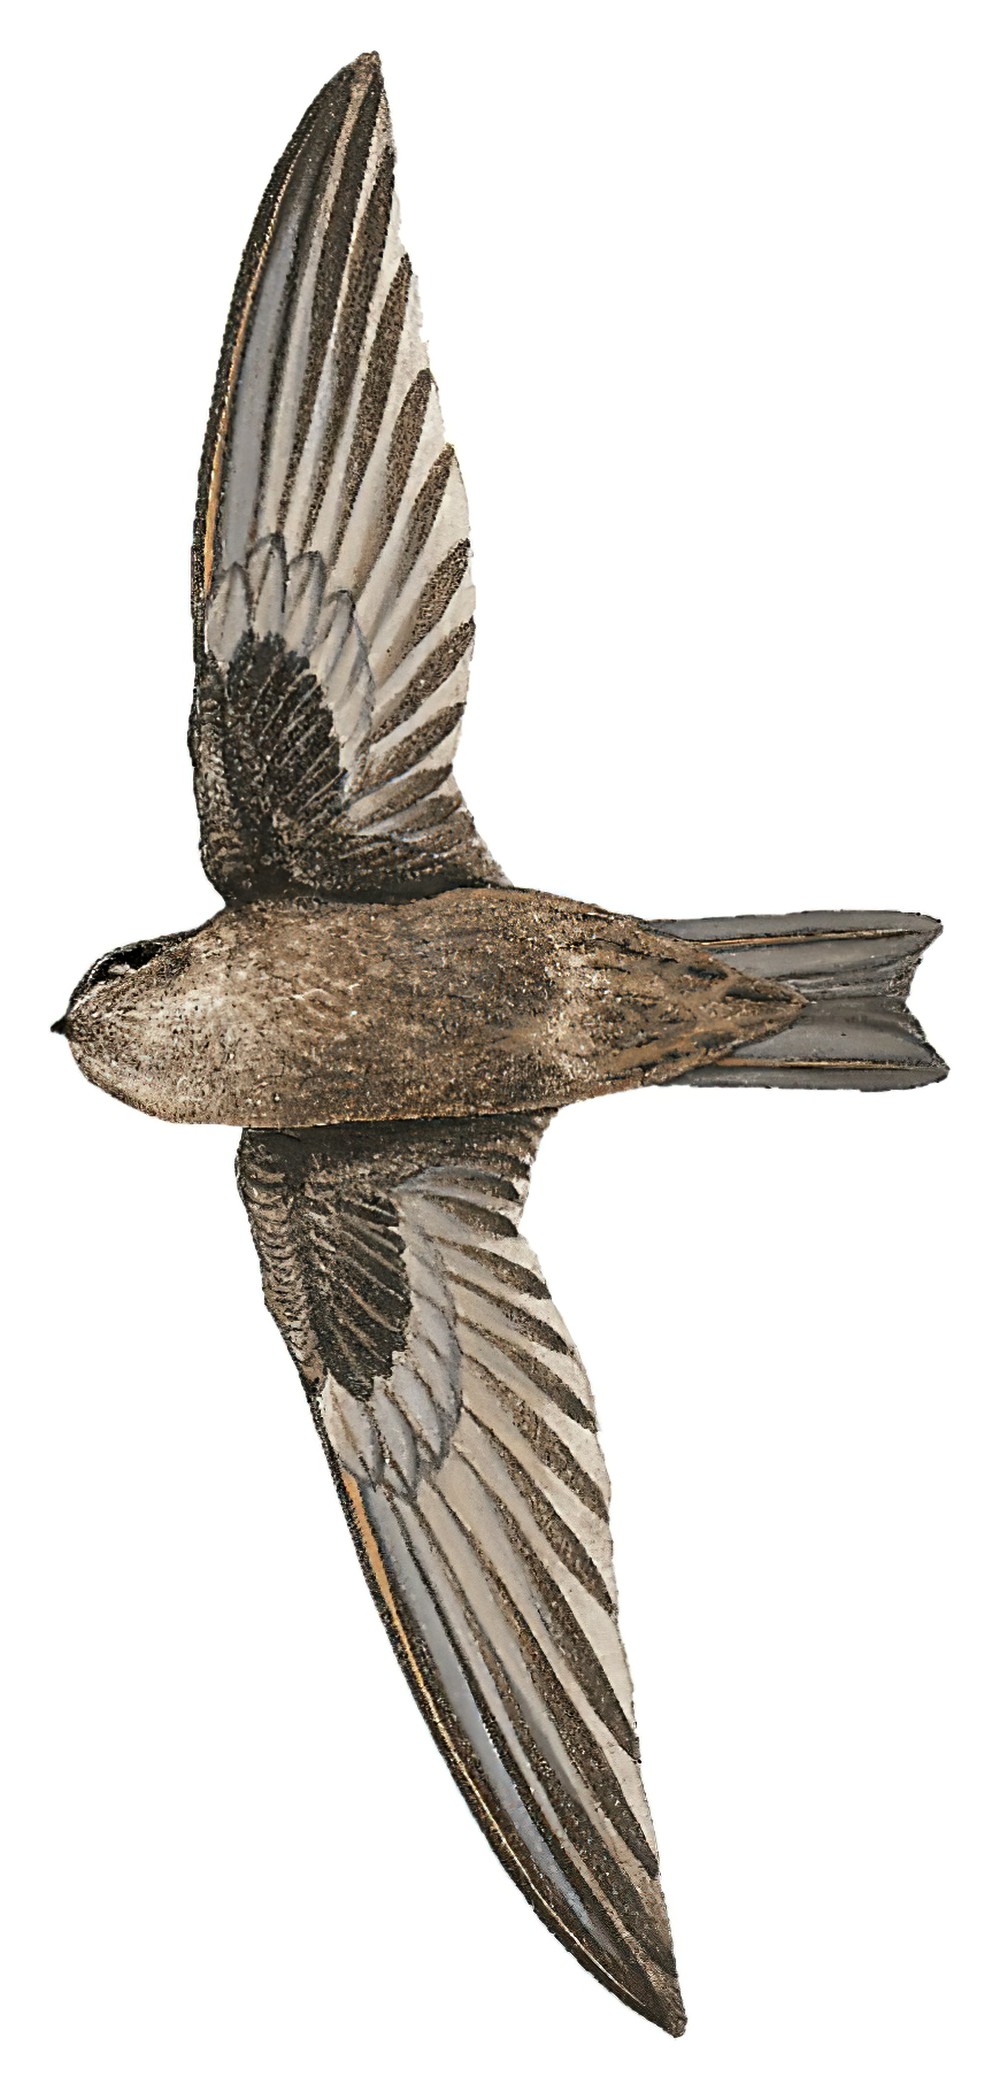 Palau Swiftlet / Aerodramus pelewensis